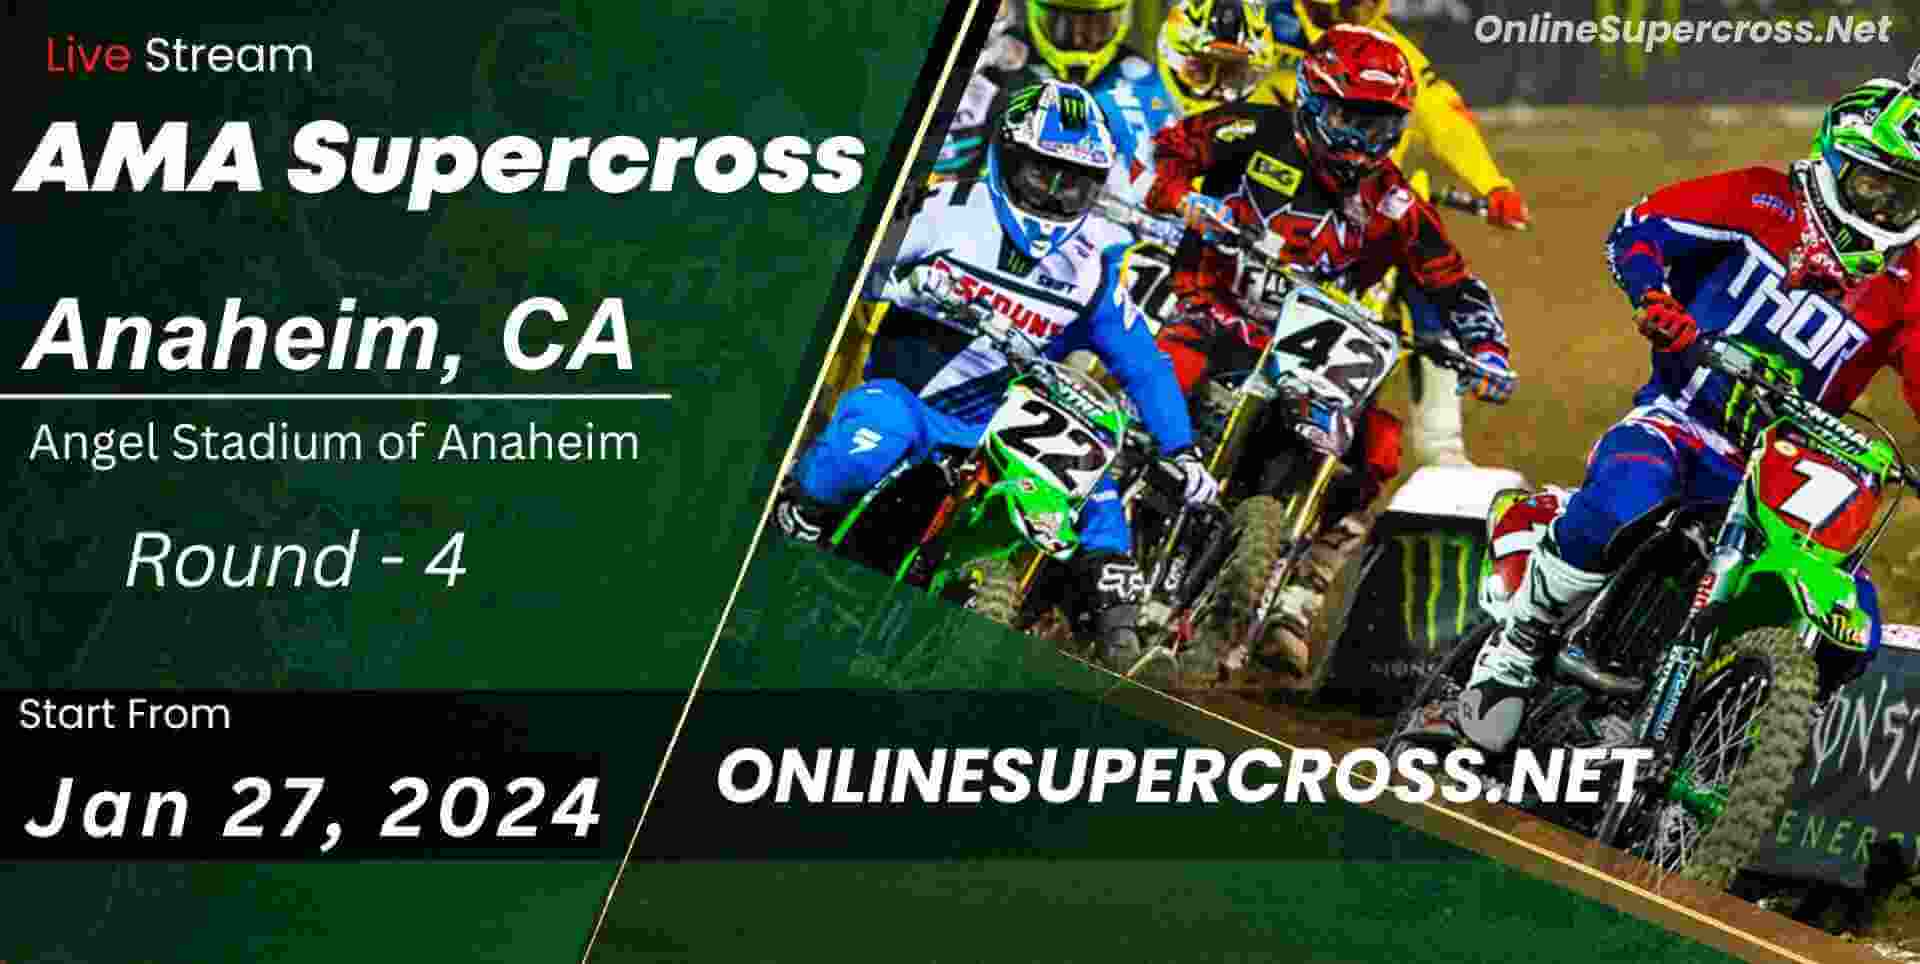 Supercross Anaheim 2 Live Online